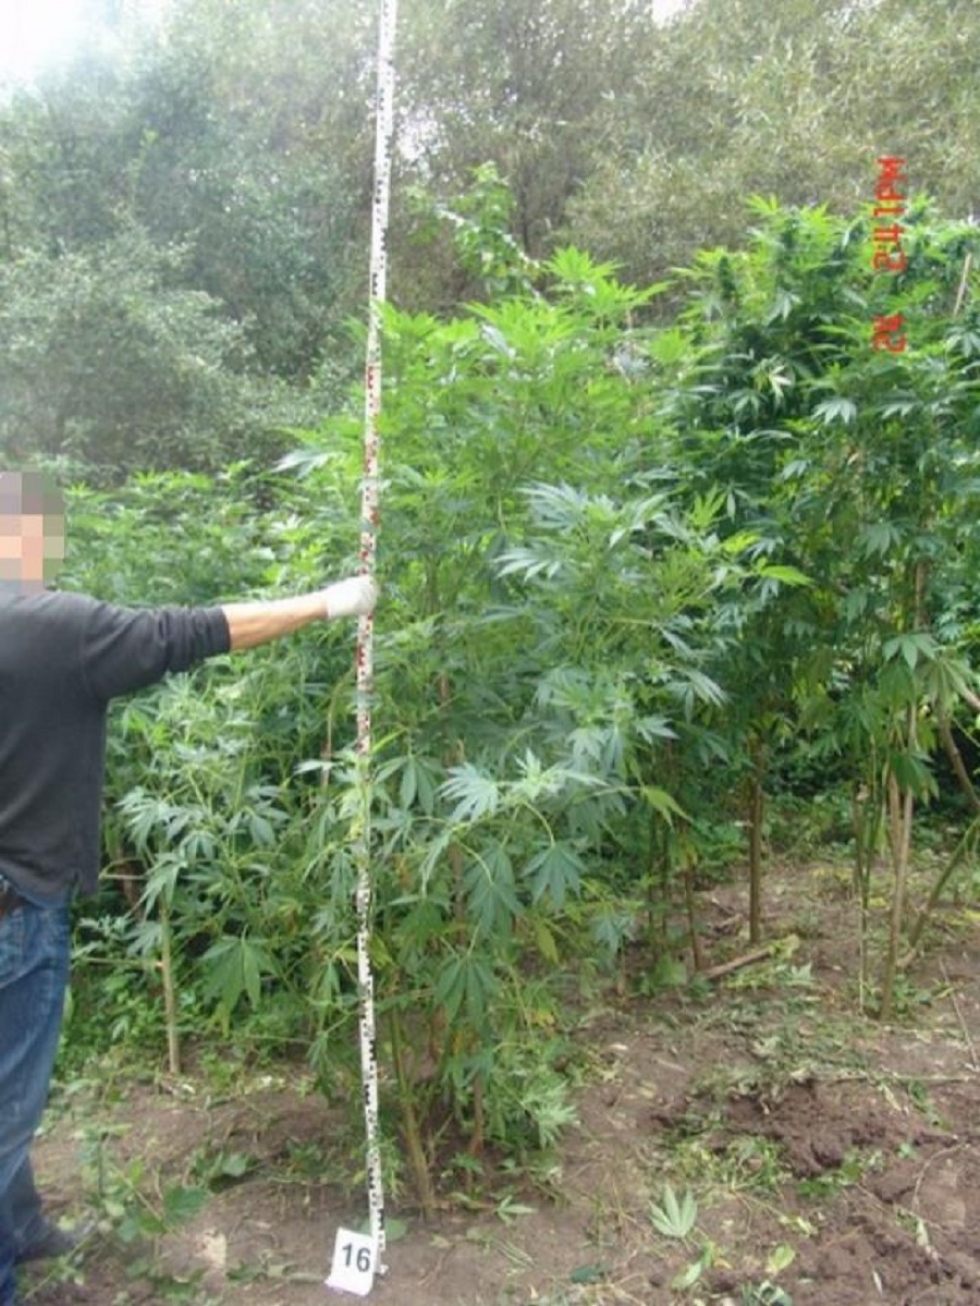 Pusztában termesztett marihuána – lebuktatták az ültetvényeseket az esztergomi rendőrök